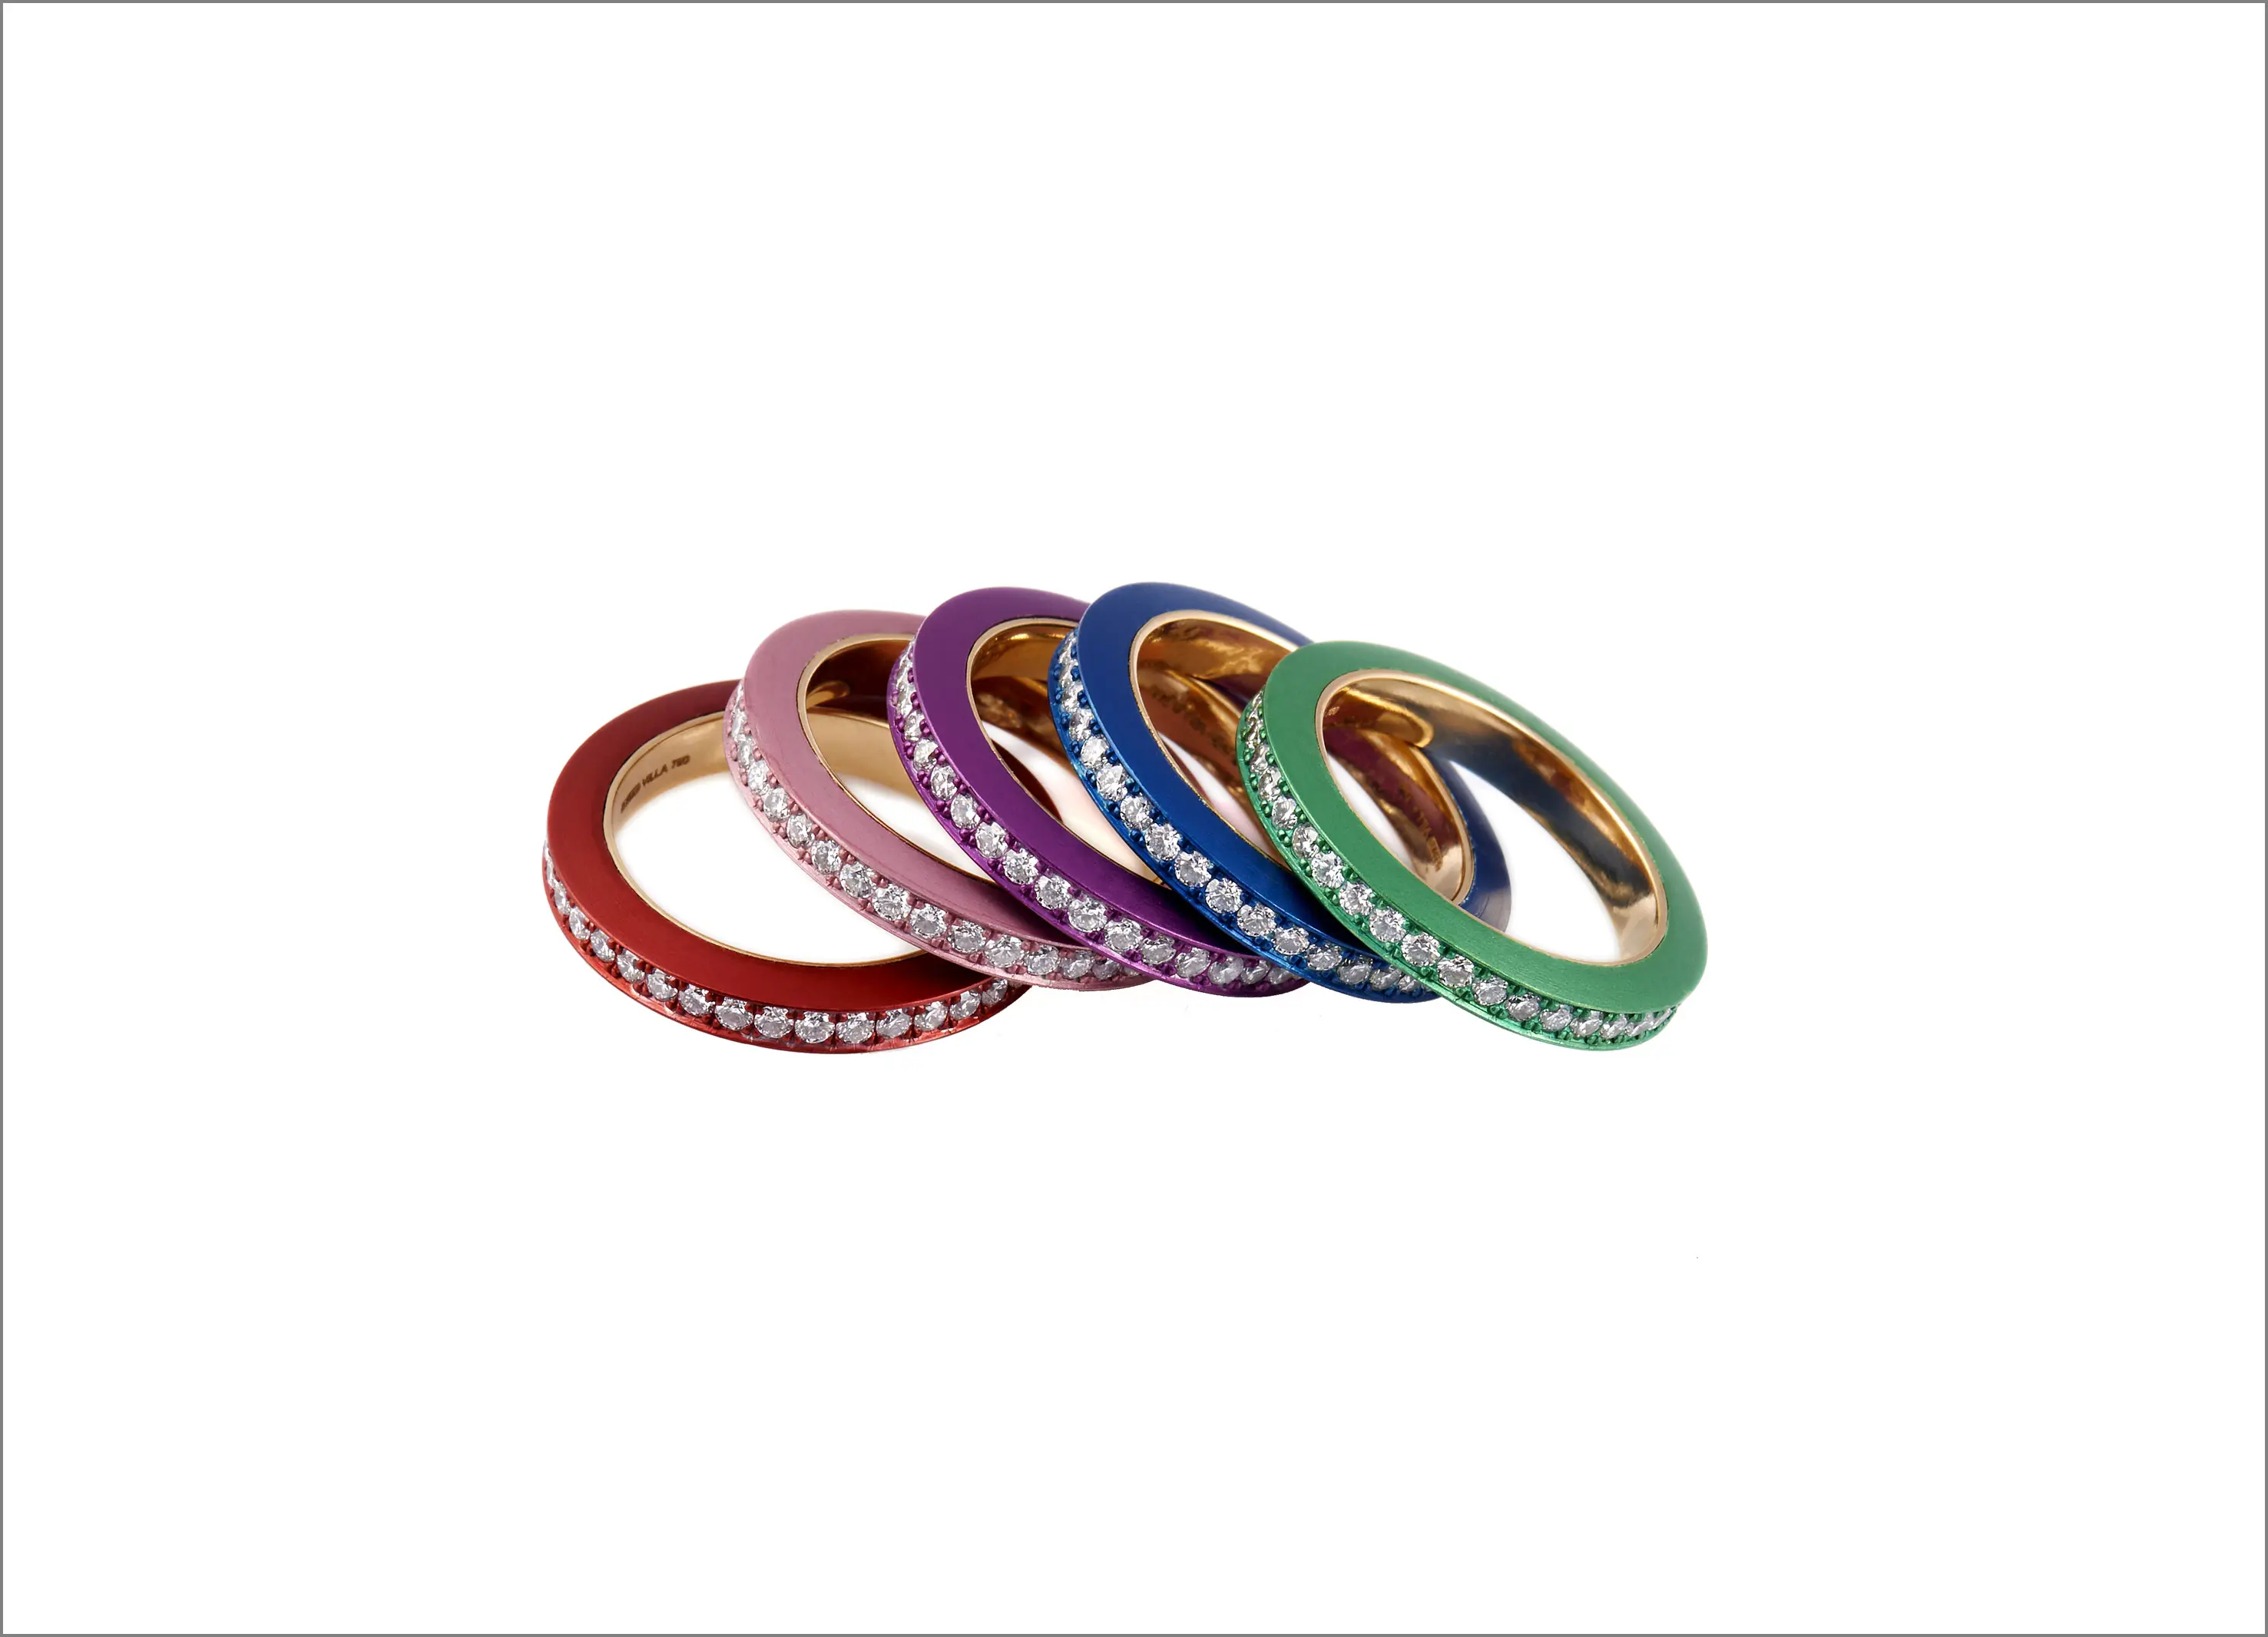 La tavolozza di colori degli anelli Lumen